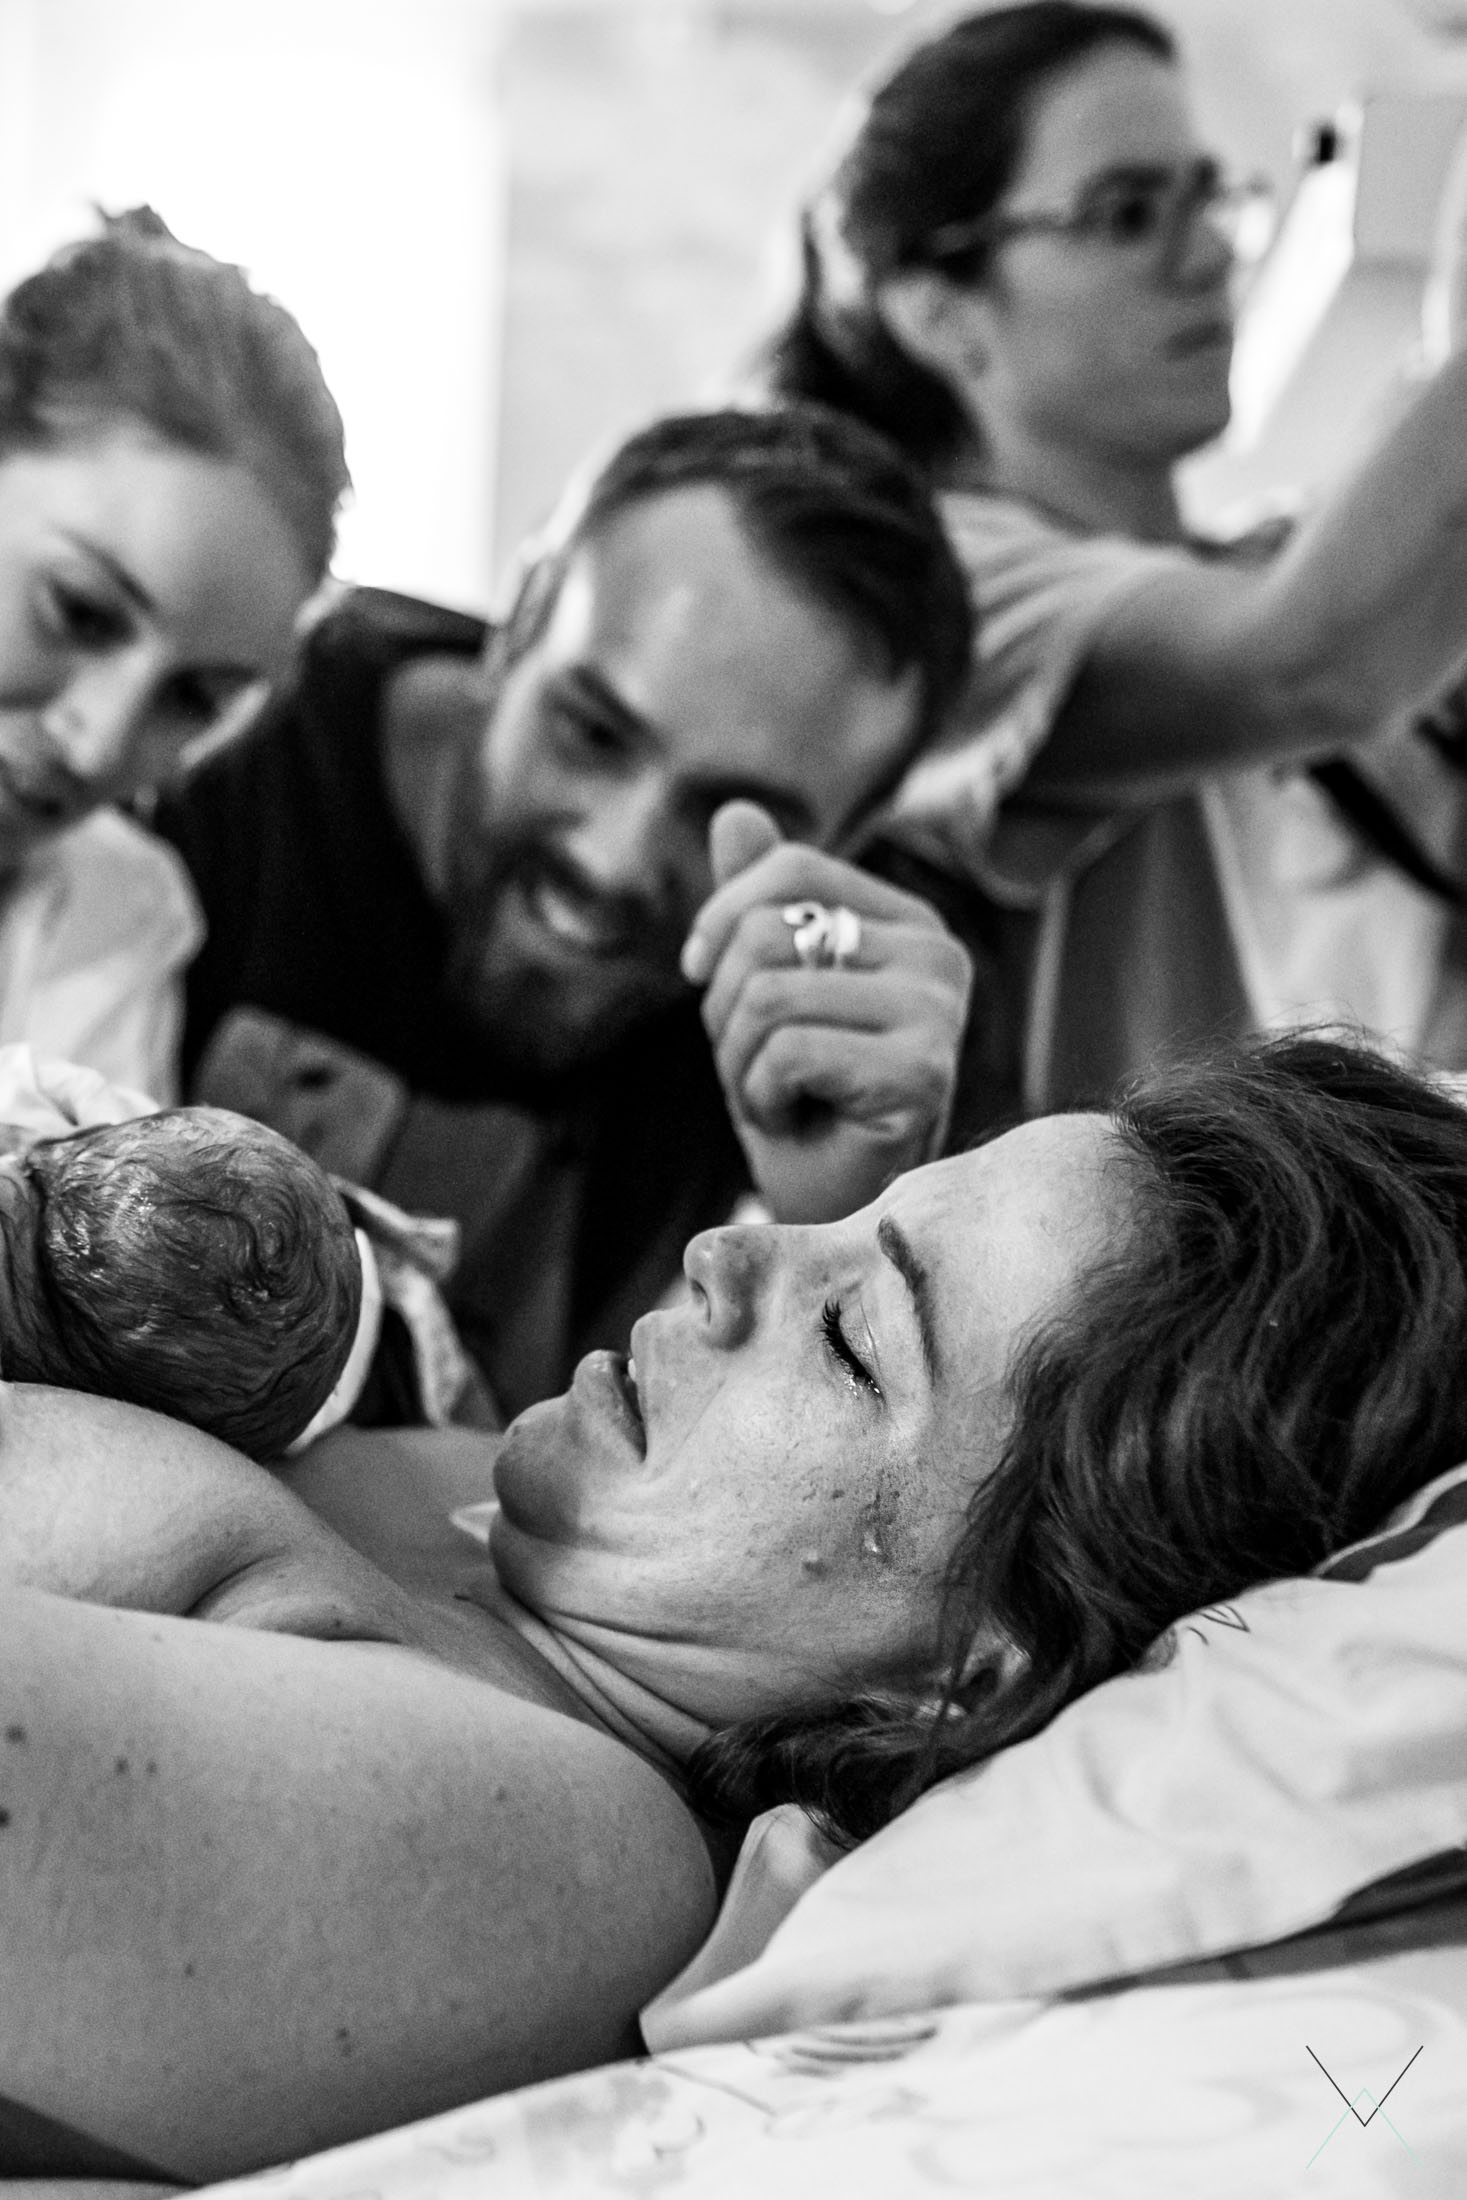 Arrivée à la maternité : qu'est-ce qui m'attend ?